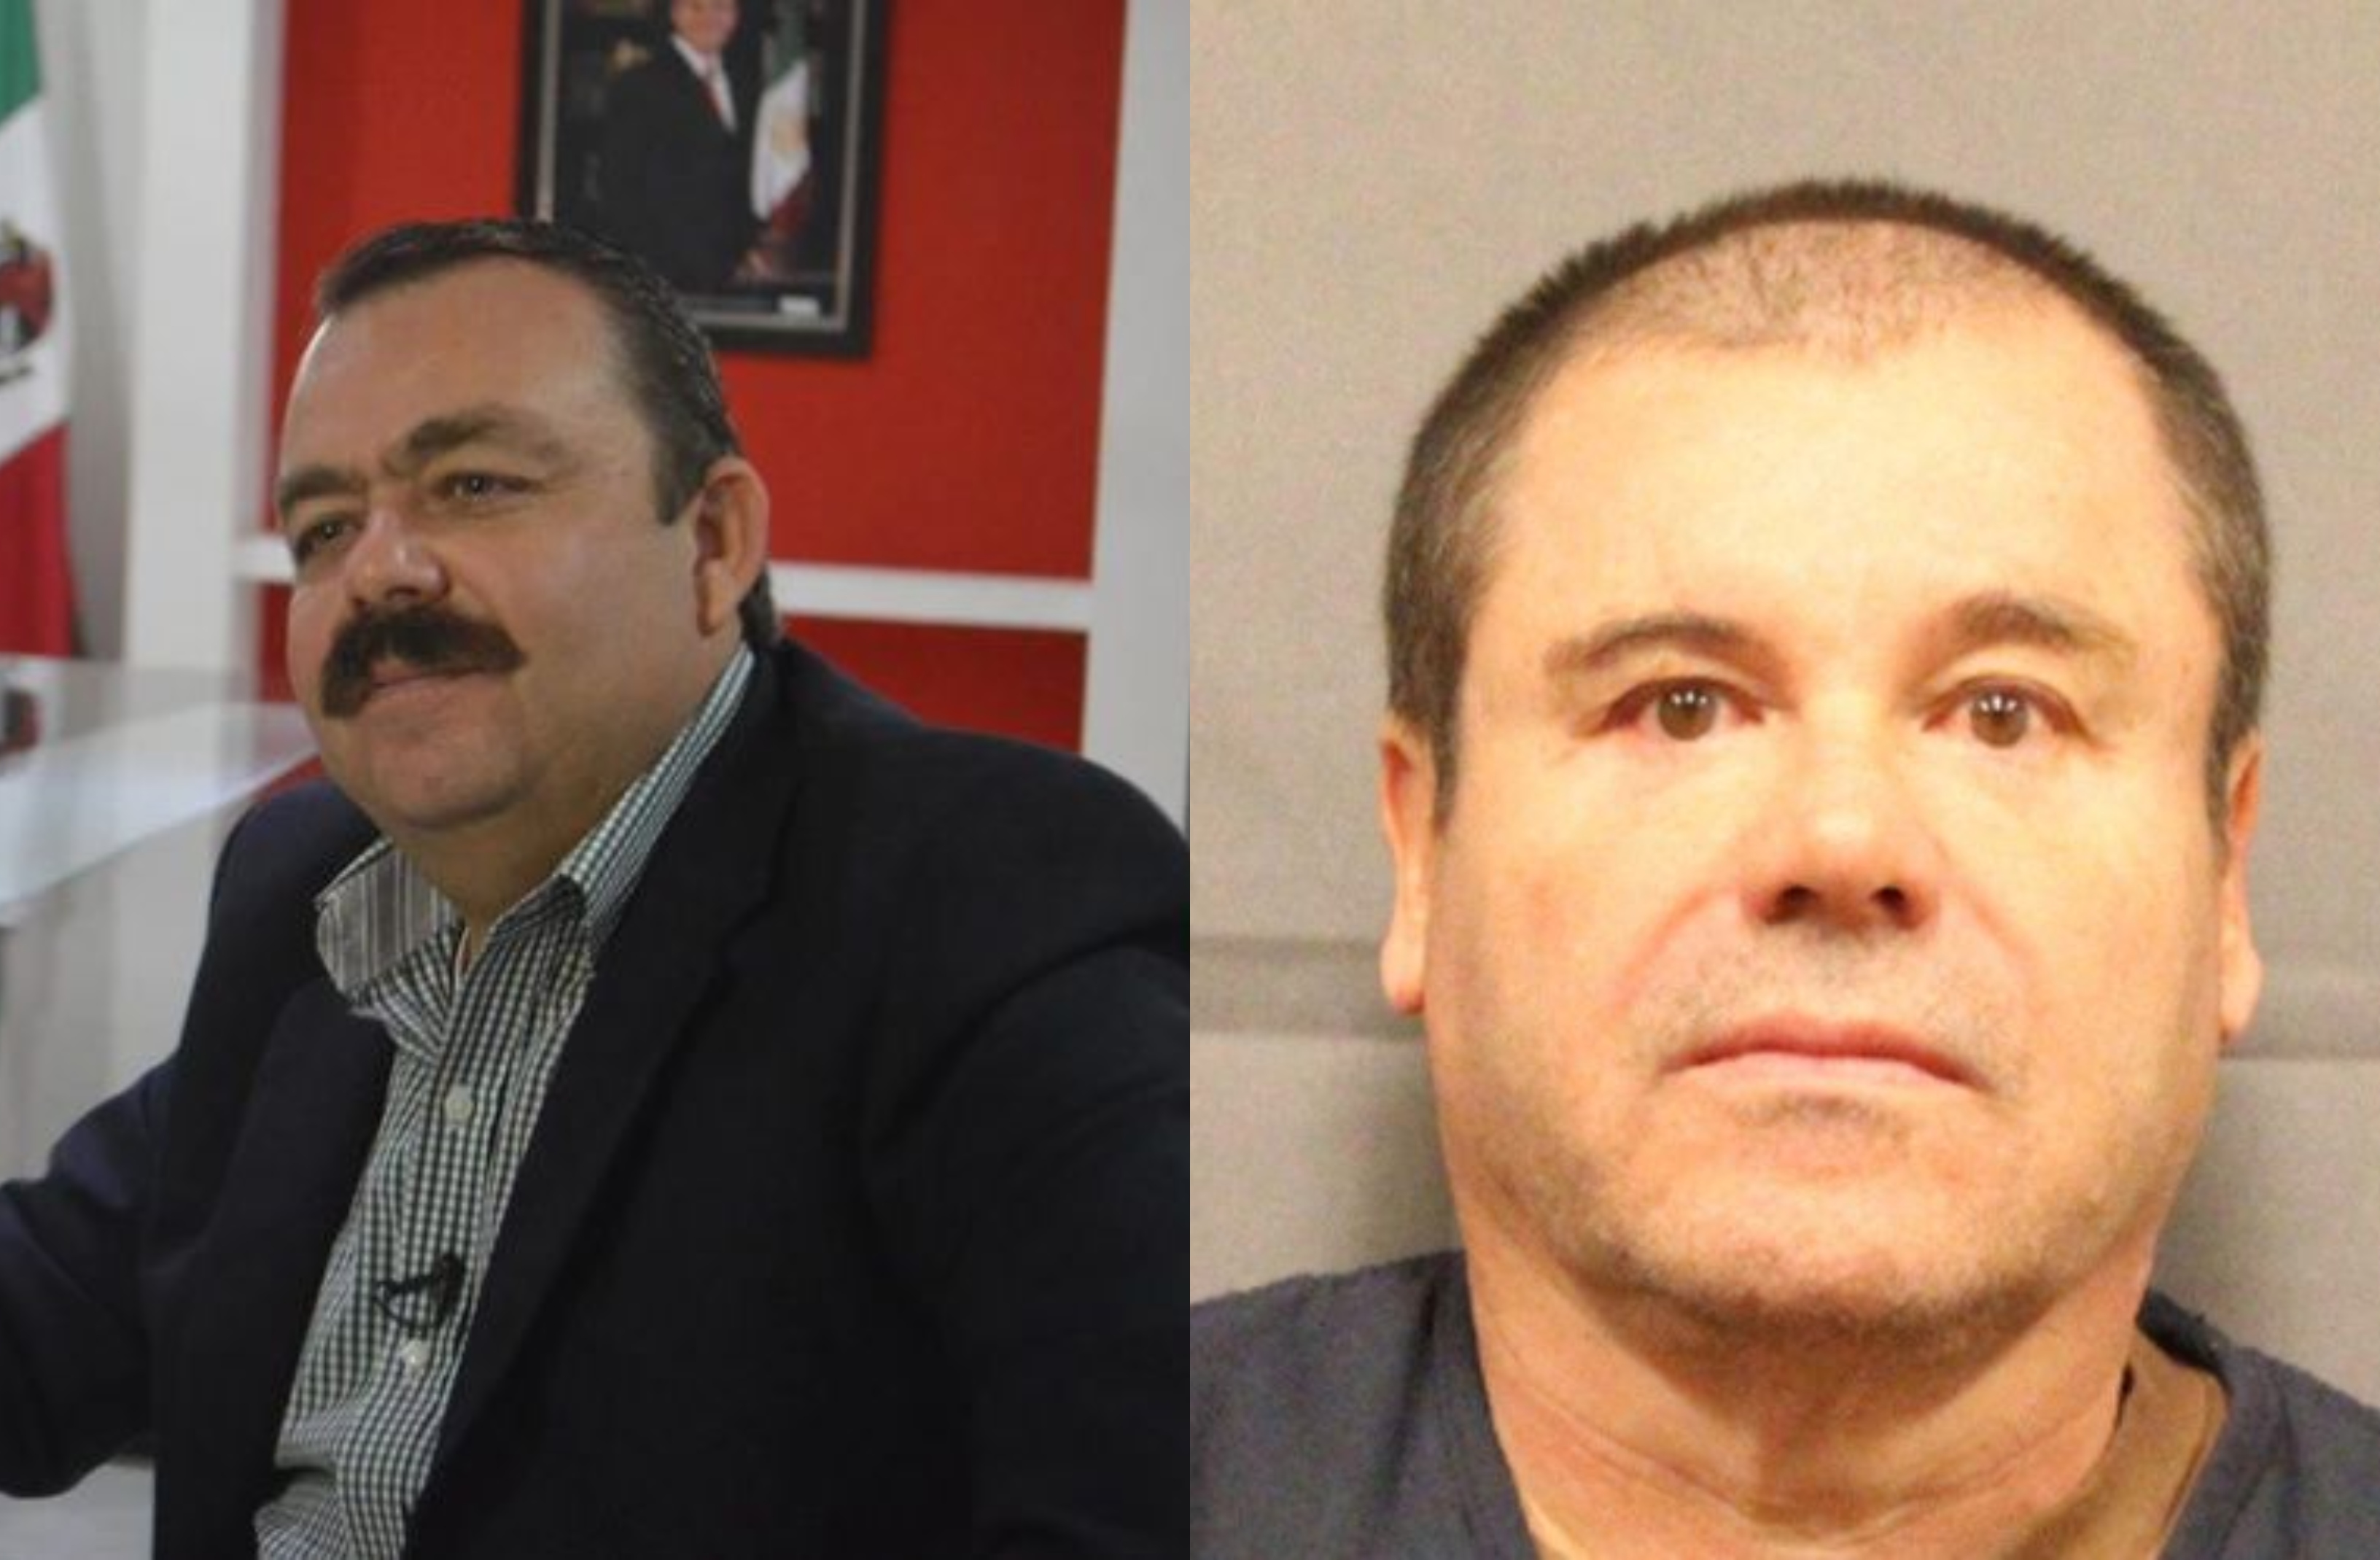 El detalle que unió a Edgar Veytia, exfiscal de Nayarit, con Joaquín “El Chapo” Guzmán durante sus juicios en EEUU